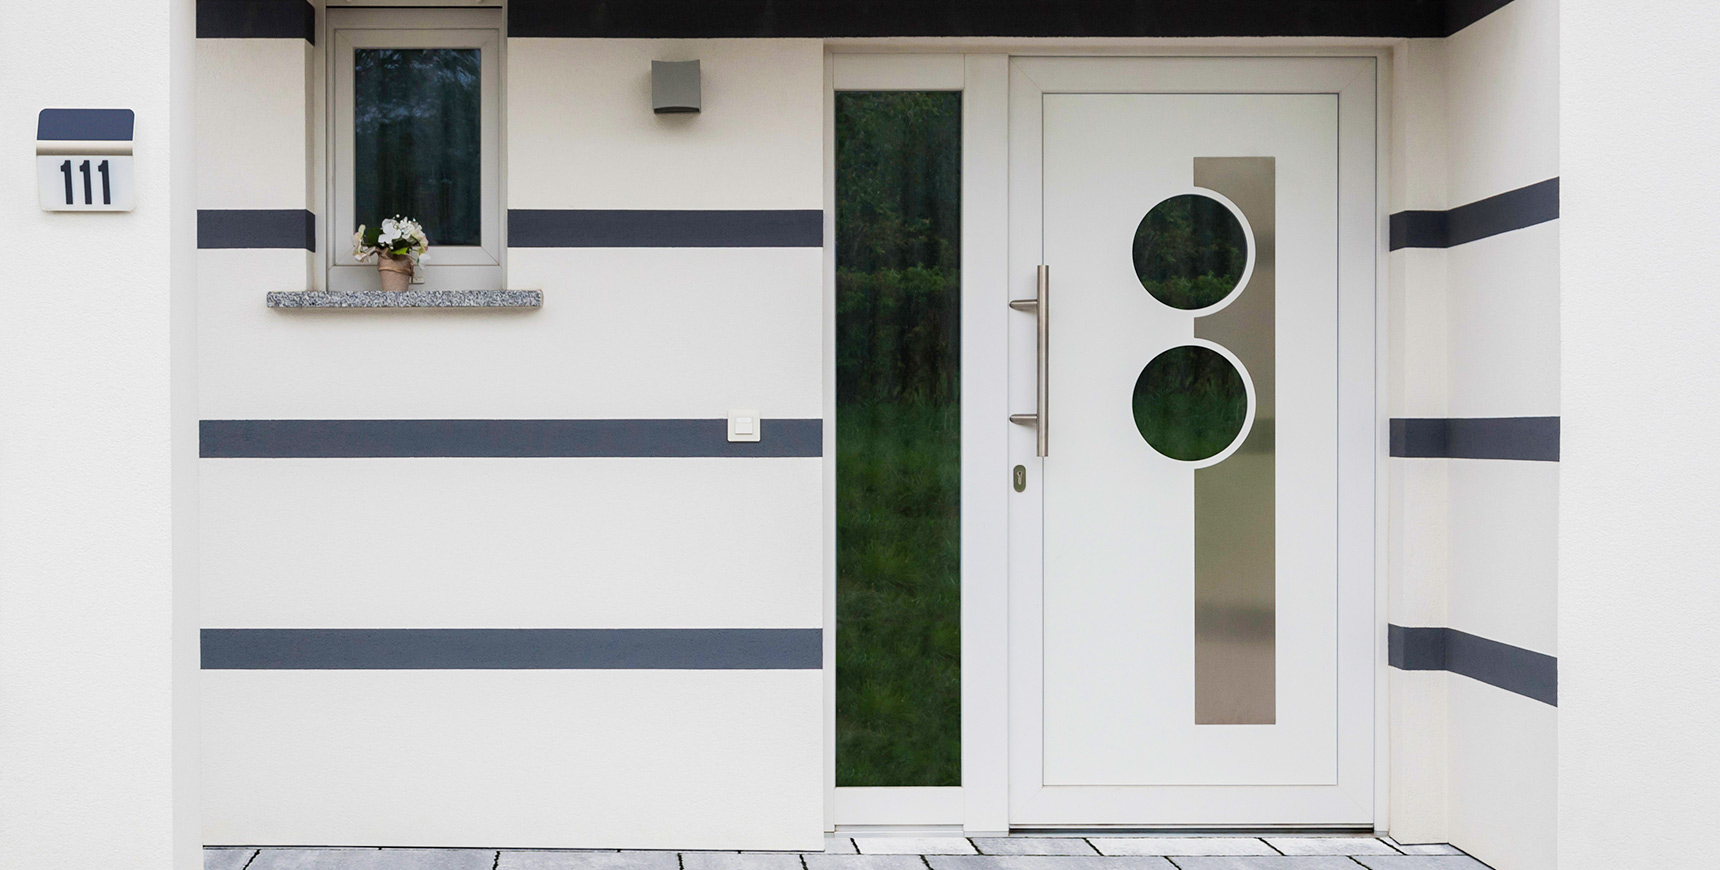 Haustür aus Kunststoff in weiß mit runden Glasscheiben. Das FUHR Kompaktprogramm für Kunststofftüren: Flexibel erweiterbare Mehrfachverriegelungen mit Rollzapfen und Schwenkriegeln. Effiziente Lösungen auch für niedrige/hohe Türen und Rundbogentüren.